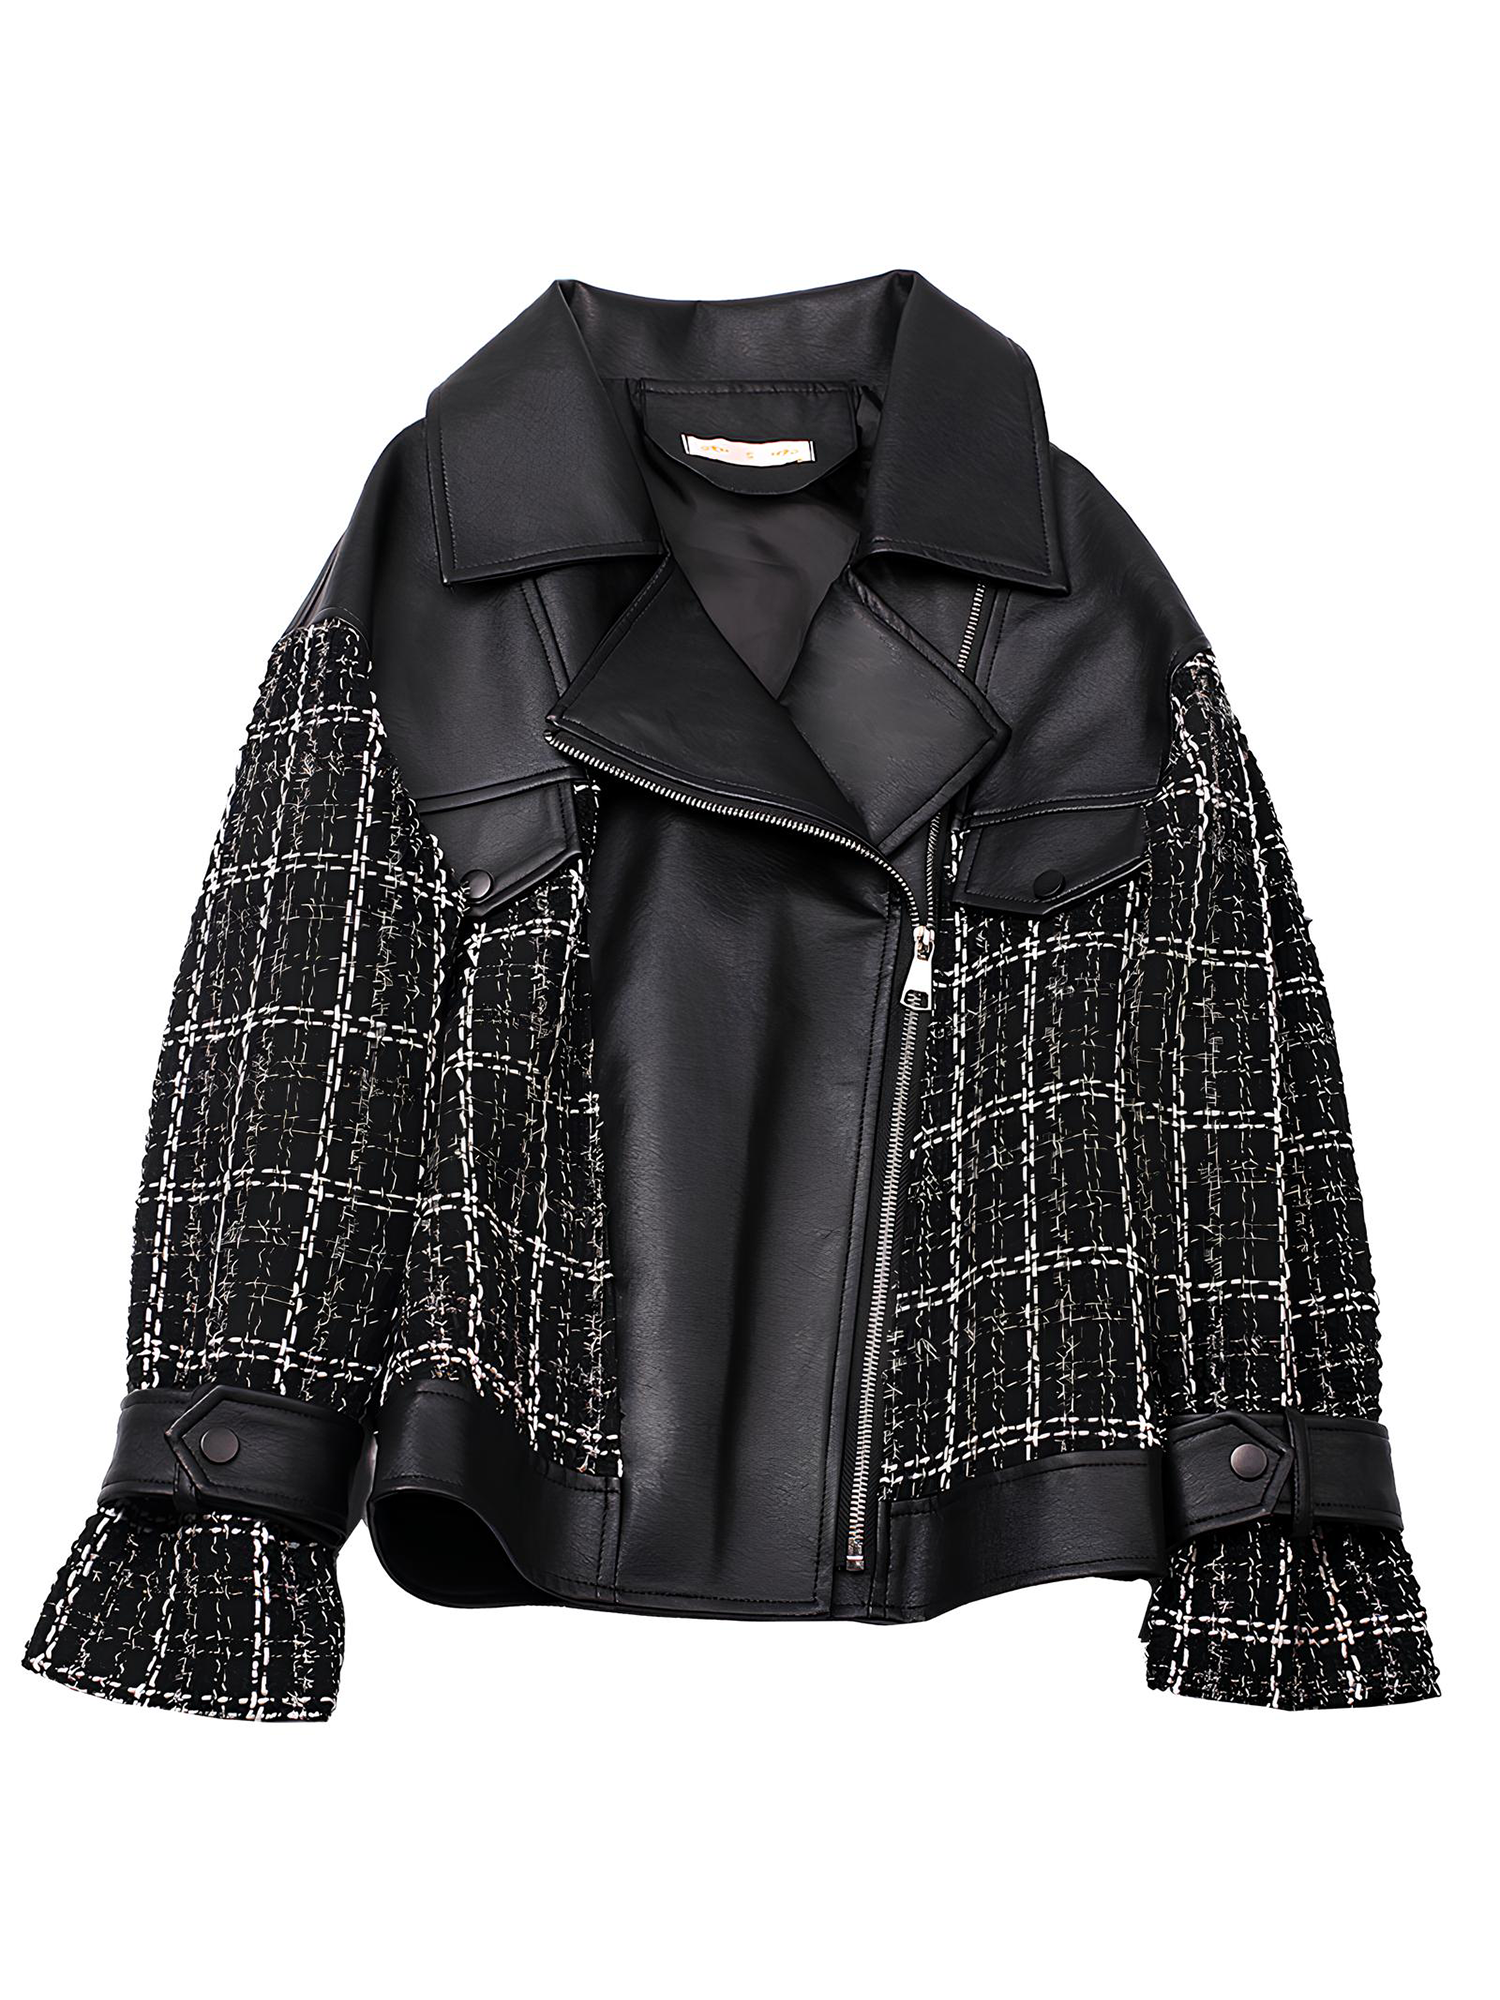 Valkyrie Leather Plaid Jacket